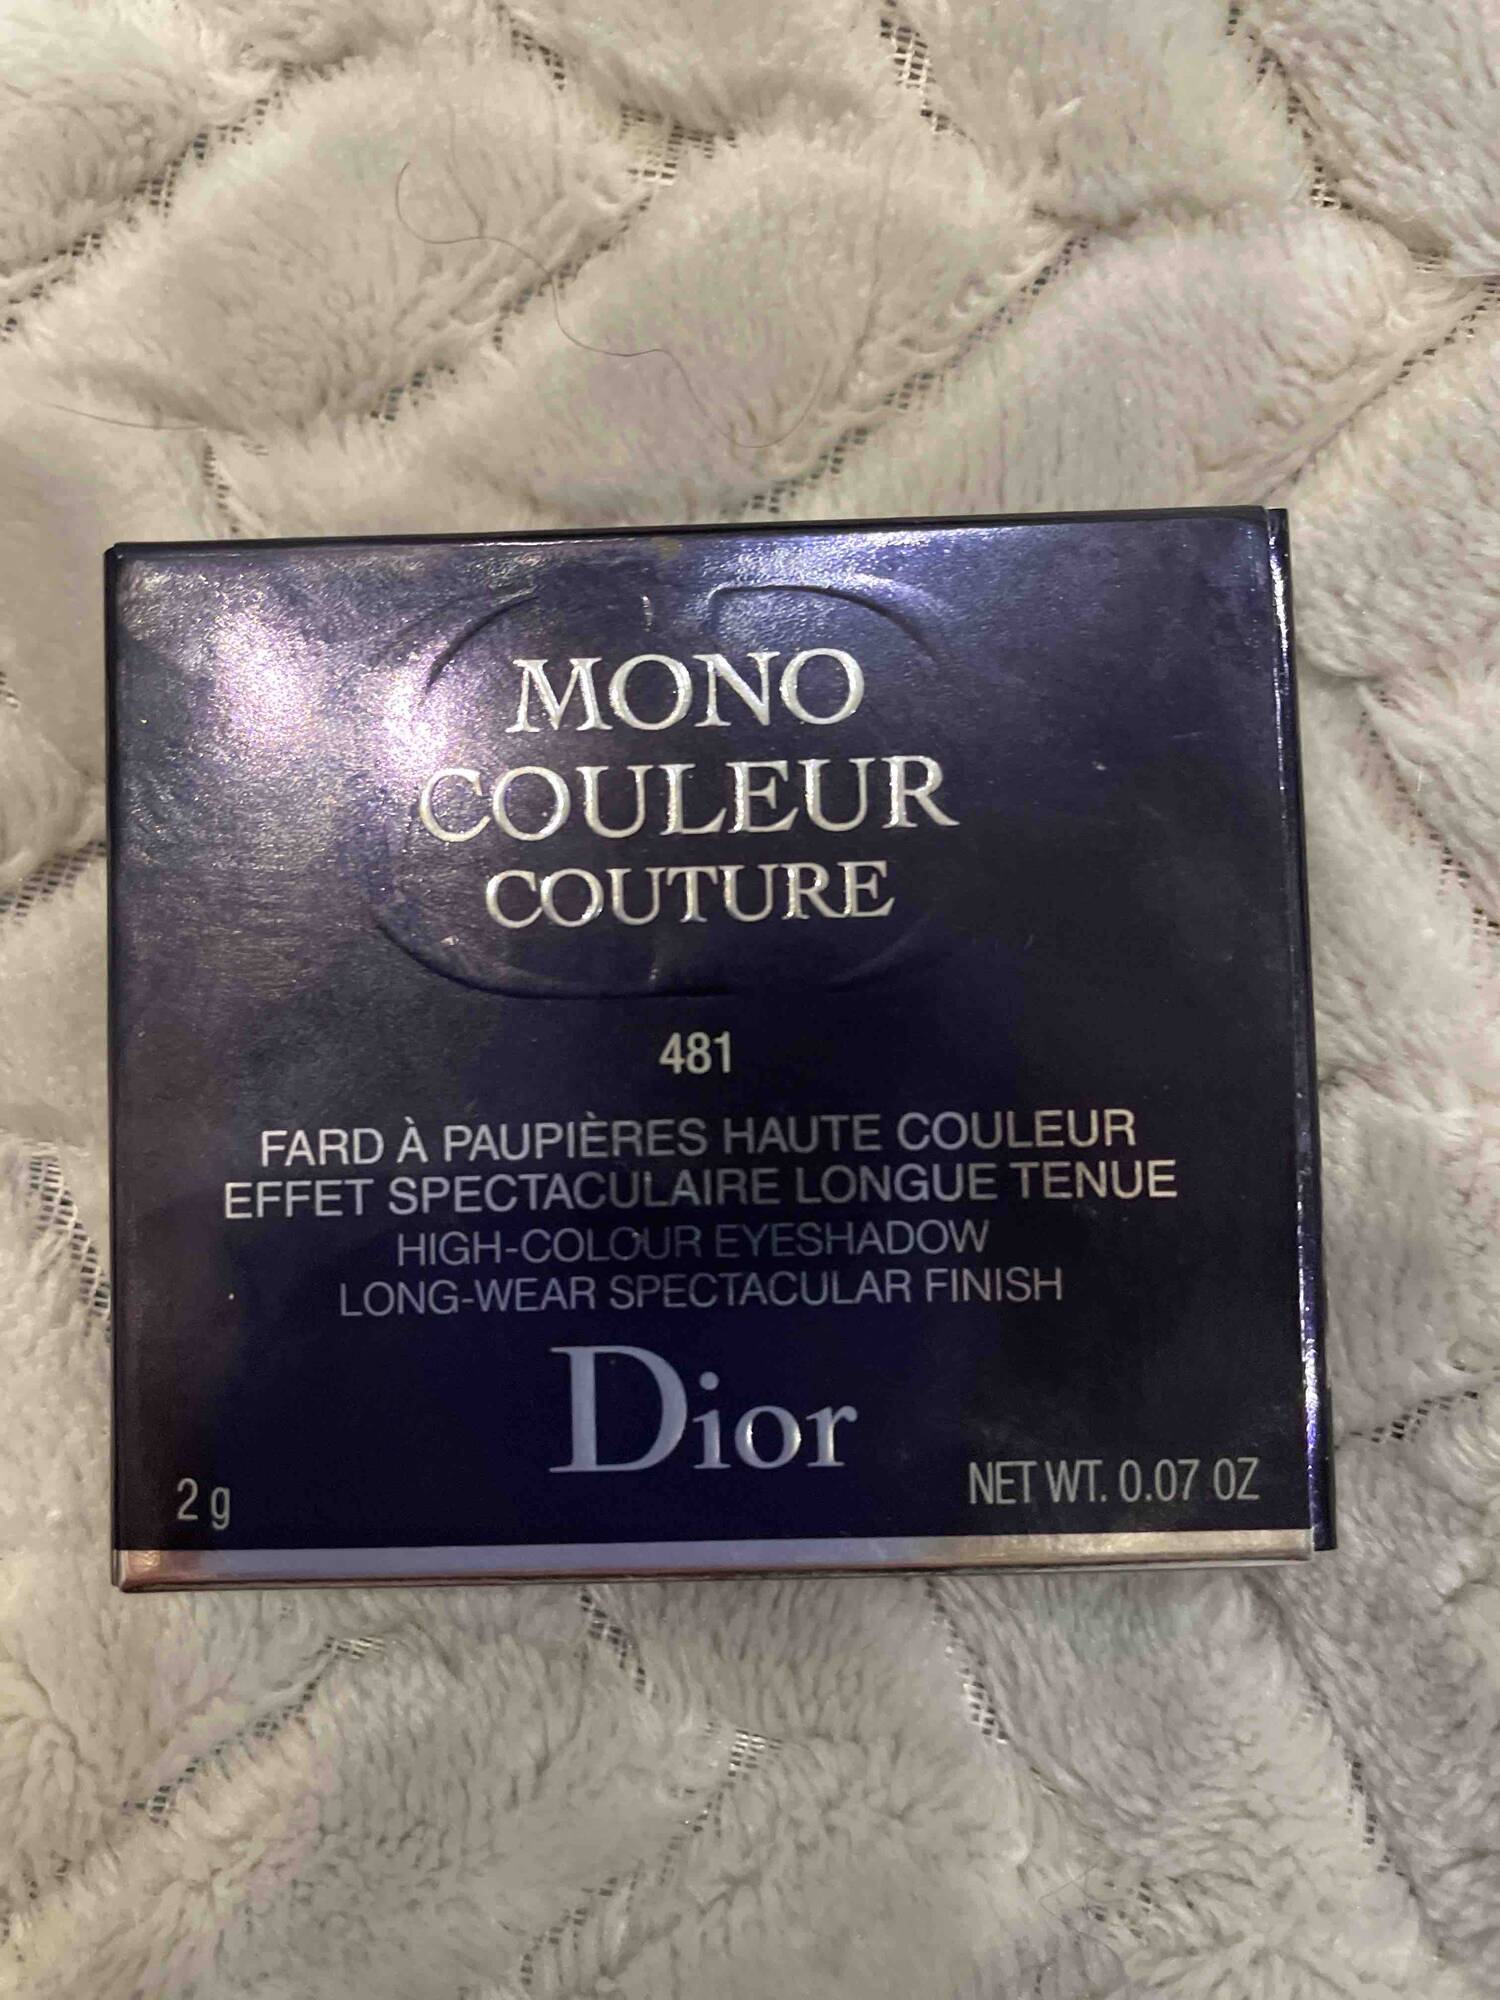 DIOR - Mono Couleur couture - Fard à paupières haute couleur